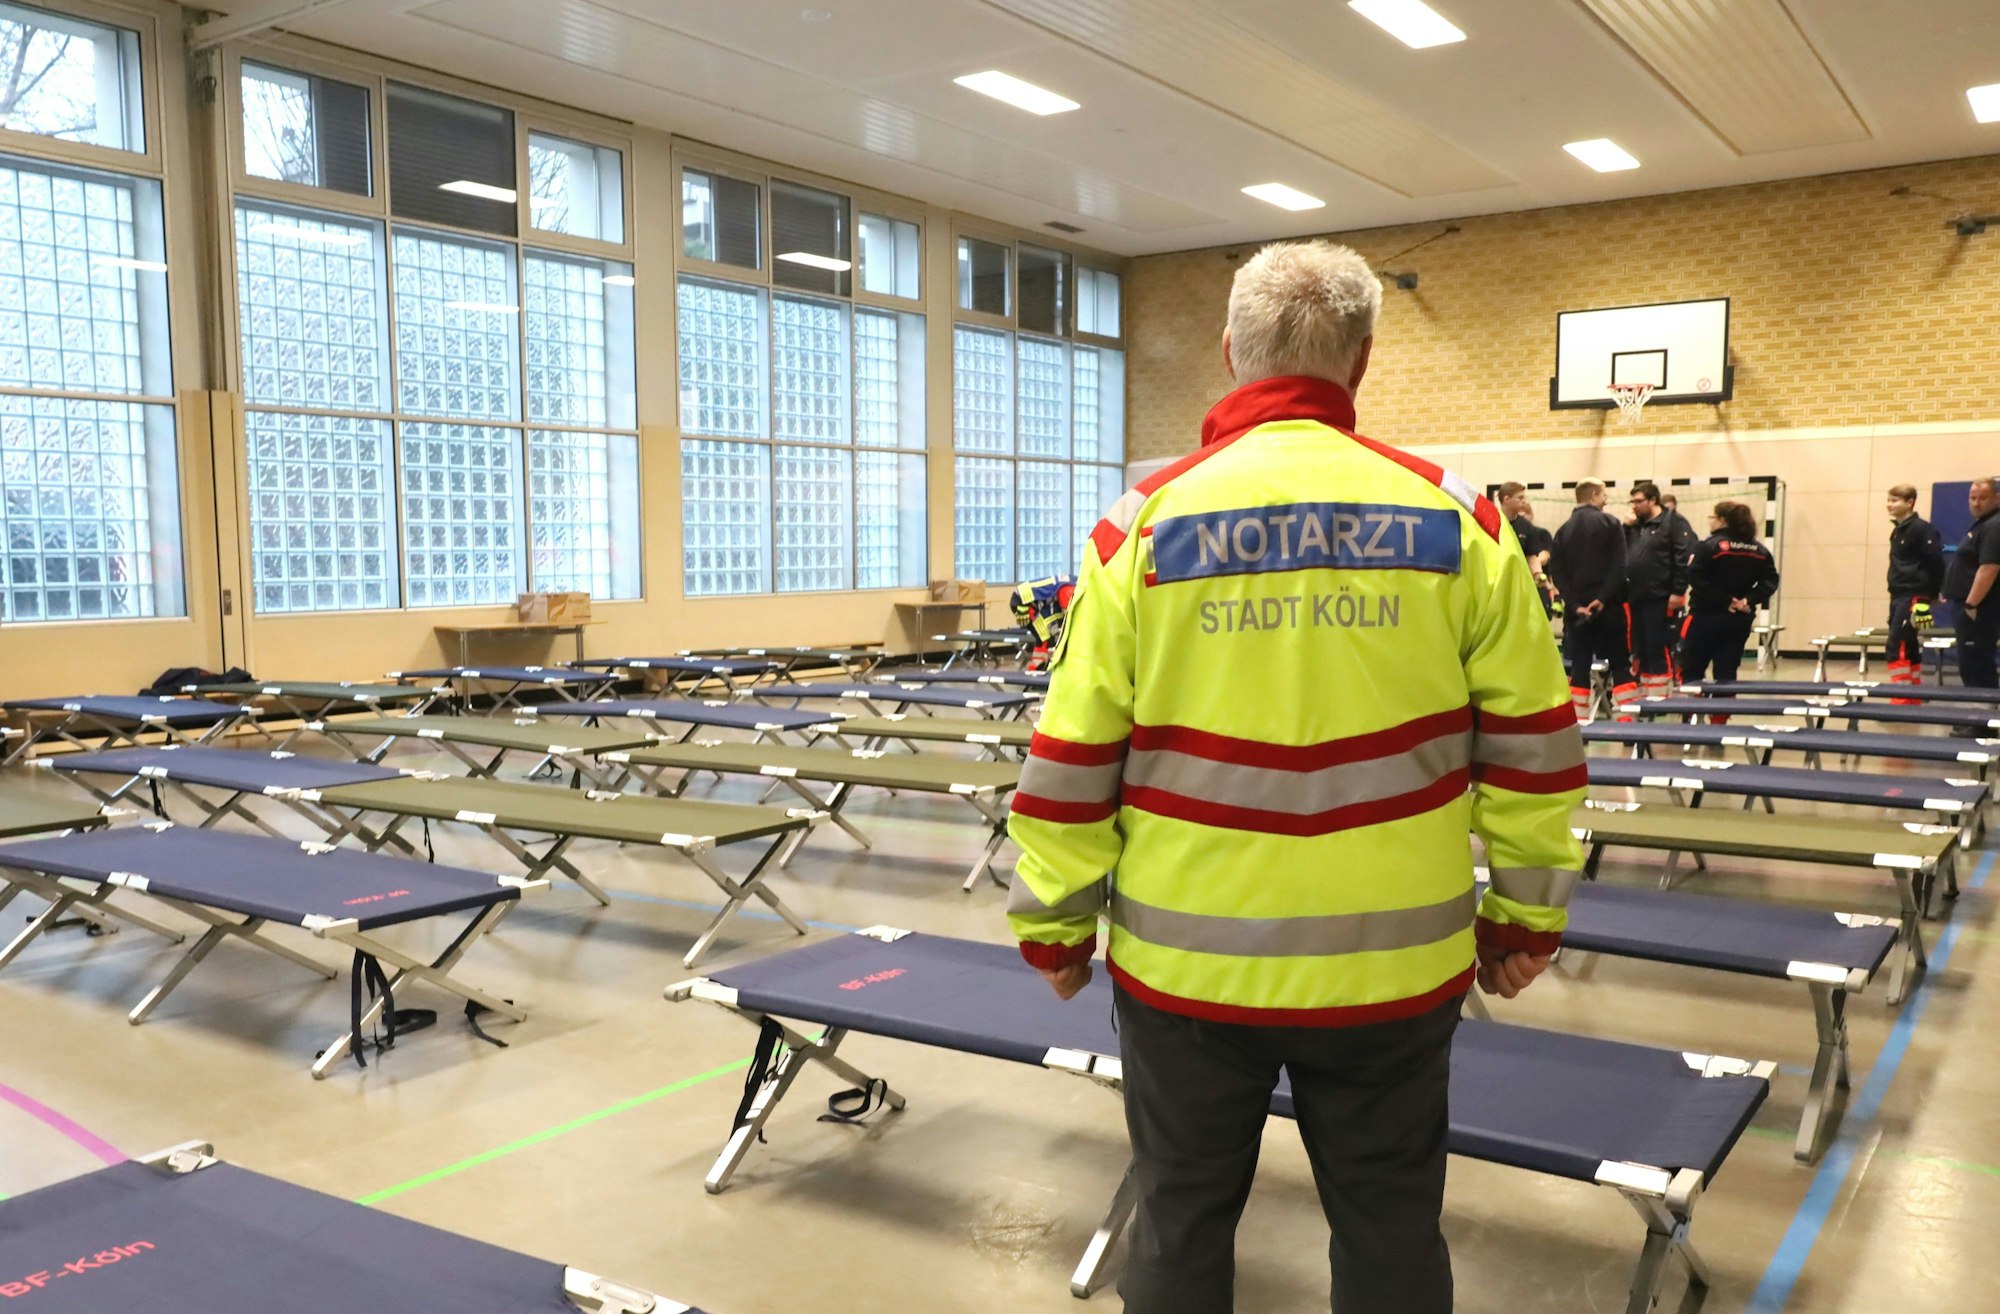 Das Notfallversorgungszentrum in der Turnhalle des Berufskolleg Humboldtstraße.
